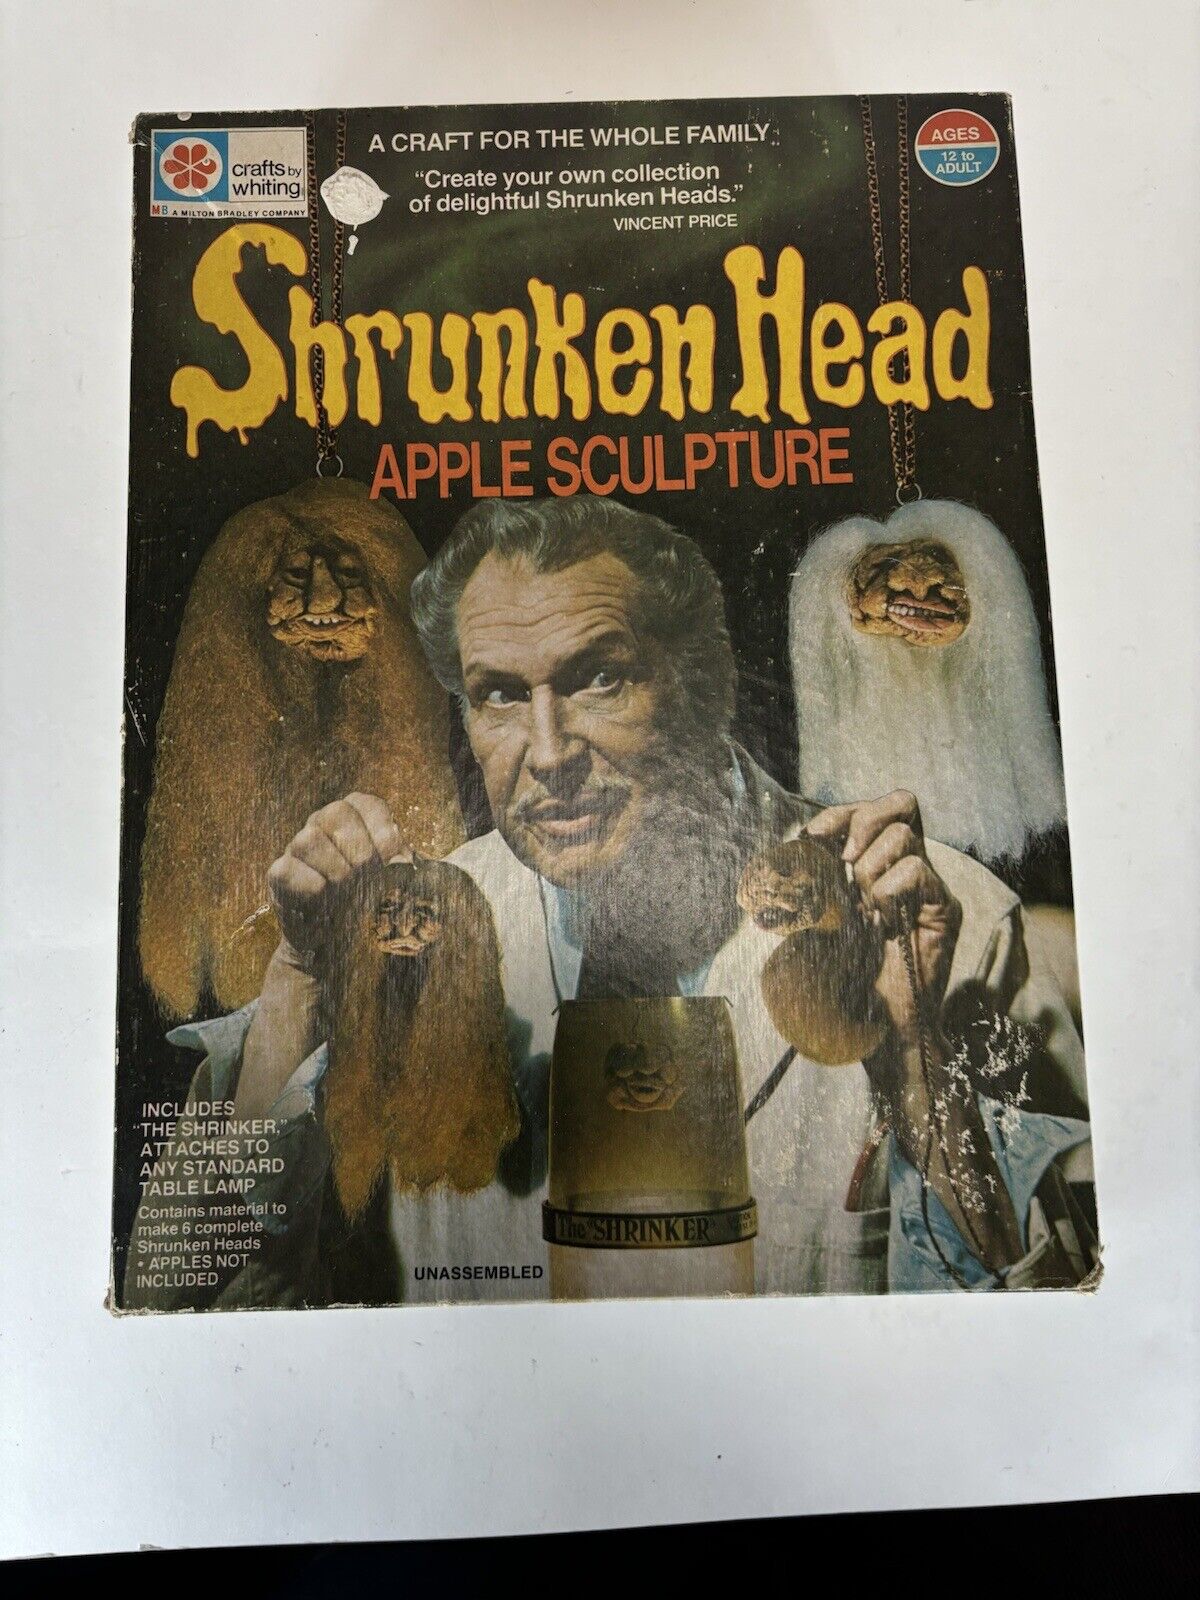 RARE VINTAGE 1975 MB SHRUNKEN HEAD APPLE SCULPTURE KIT VINCENT PRICE